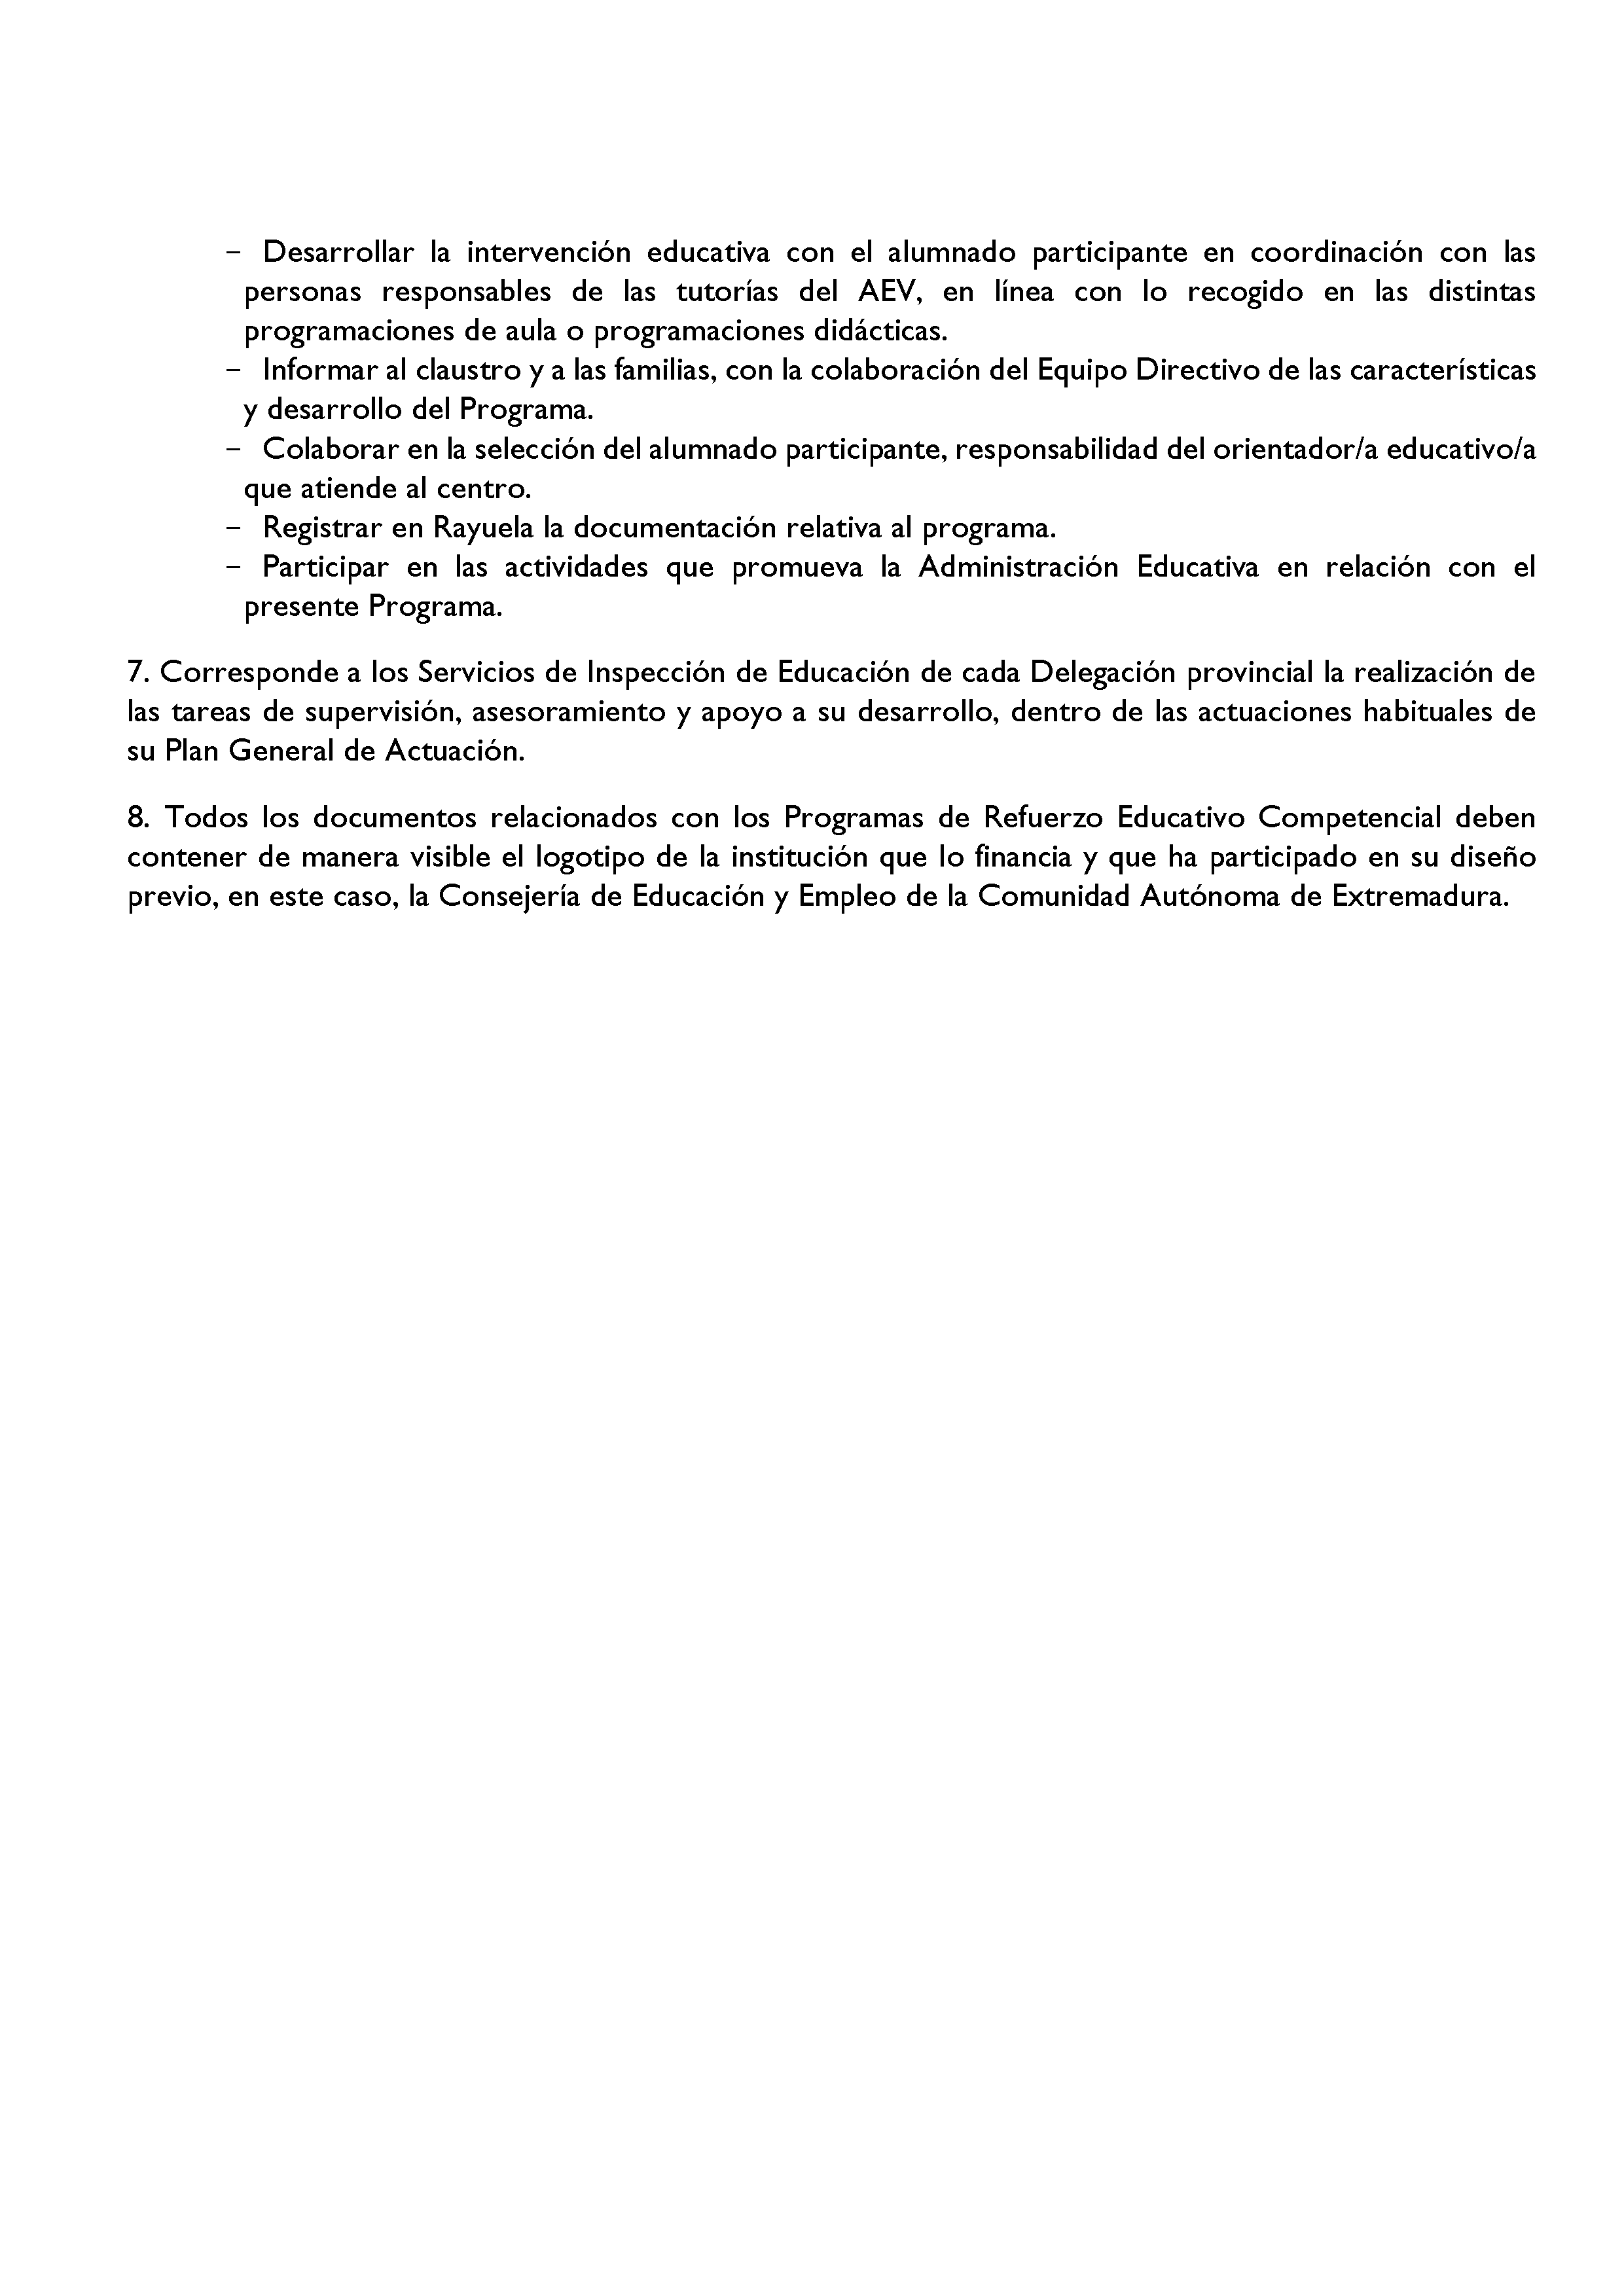 ANEXO I. ORGANIZACIÓN Y FUNCIONAMIENTO DE LOS PROGRAMAS DE REFUERZO EDUCATIVO COMPETENCIAL. Pag 2